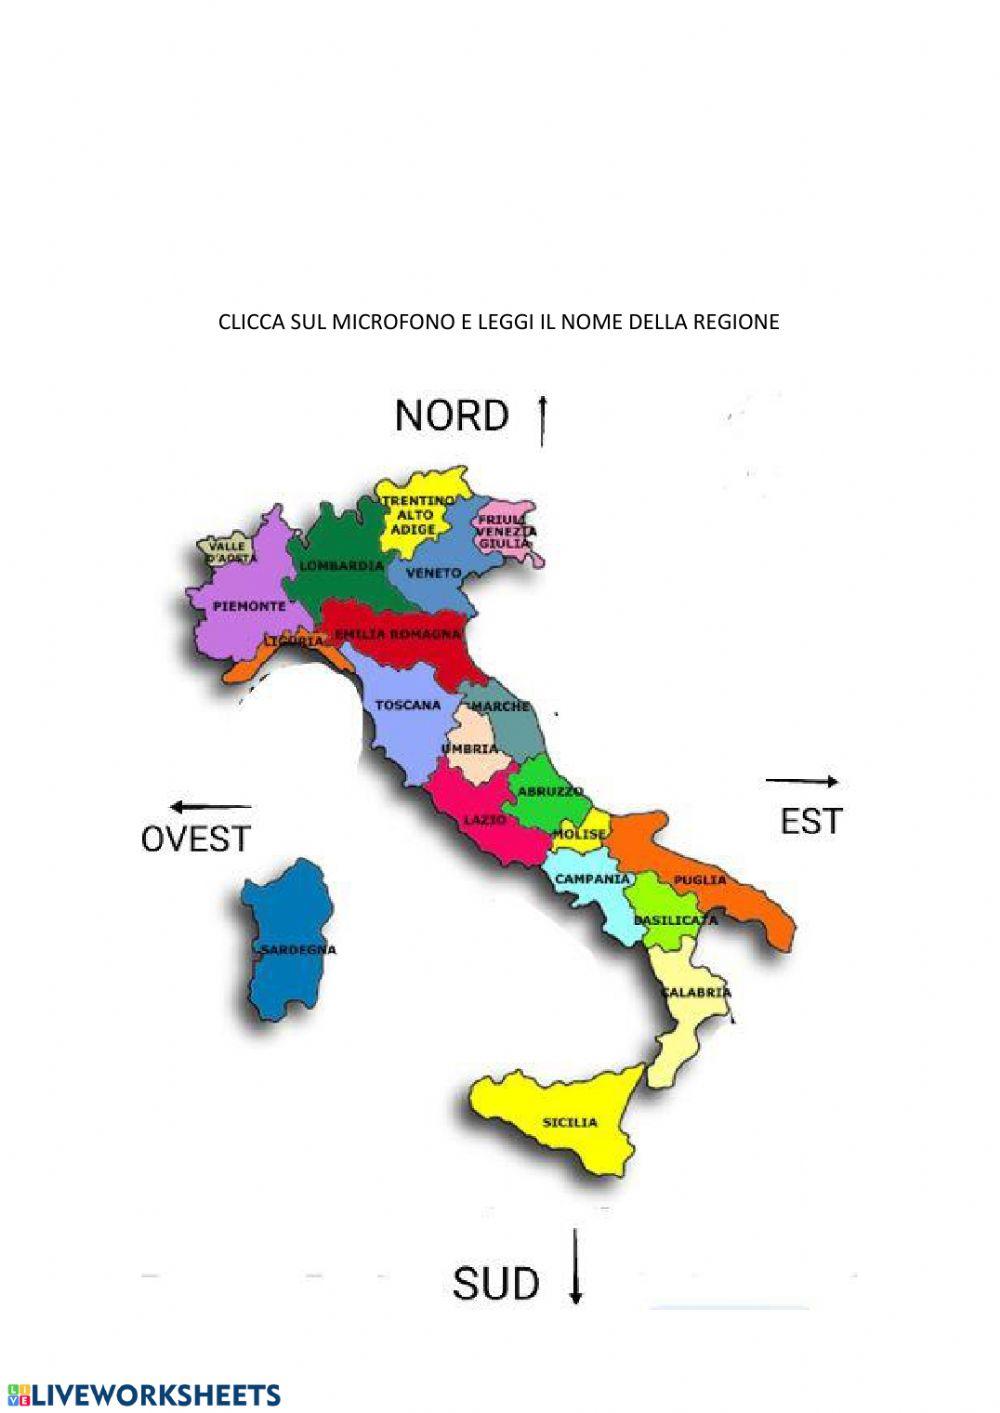 ITALIA: PRESENTAZIONE